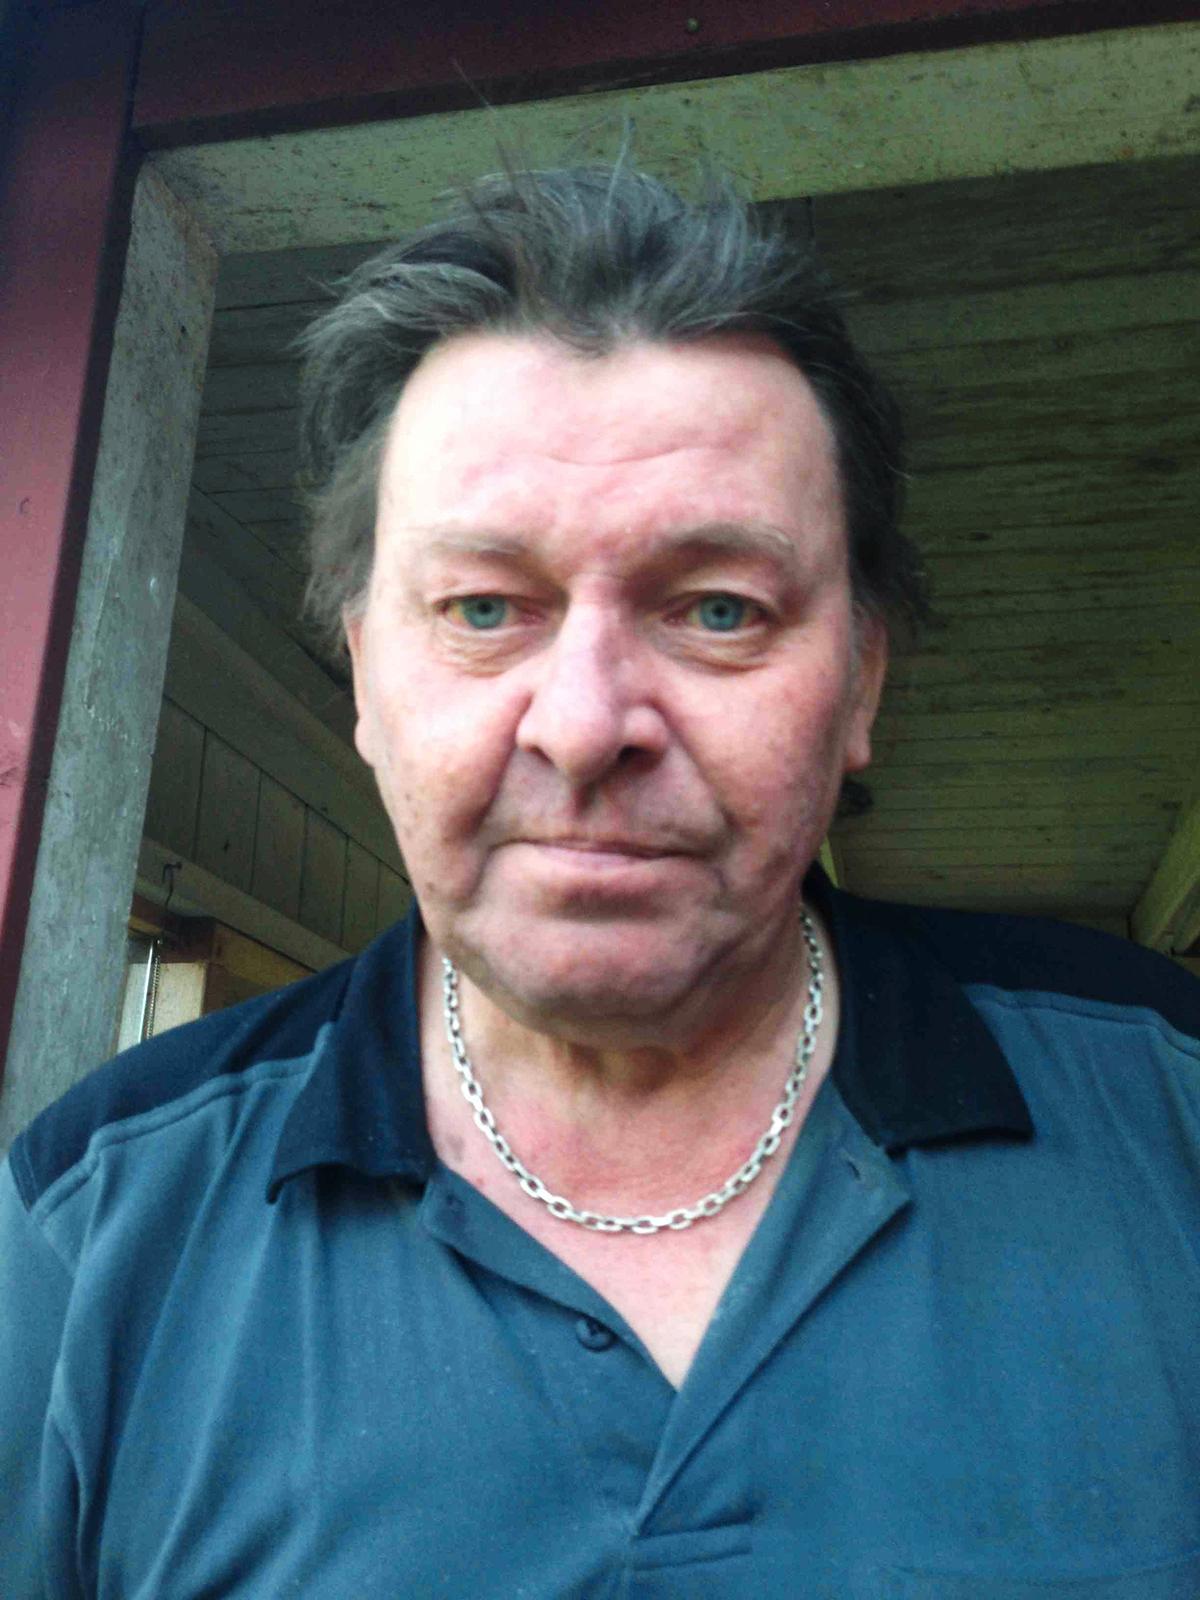 Glenn Eklund, 64, bor granne med den mördade mannen.